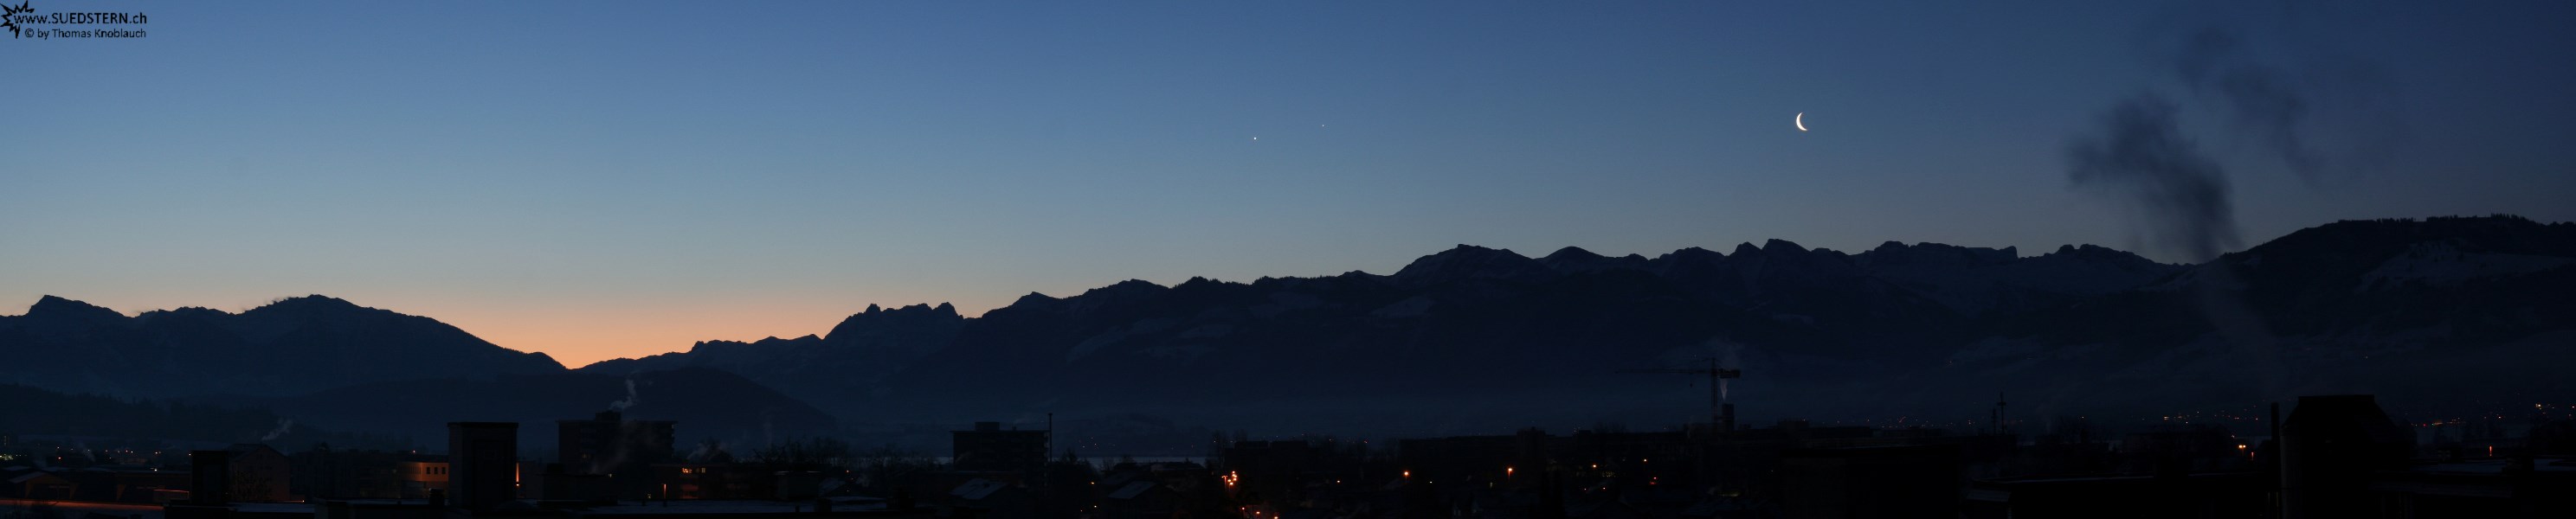 2008-02-03 - Sonnenaufgang mit Mond, Venus, Jupiter